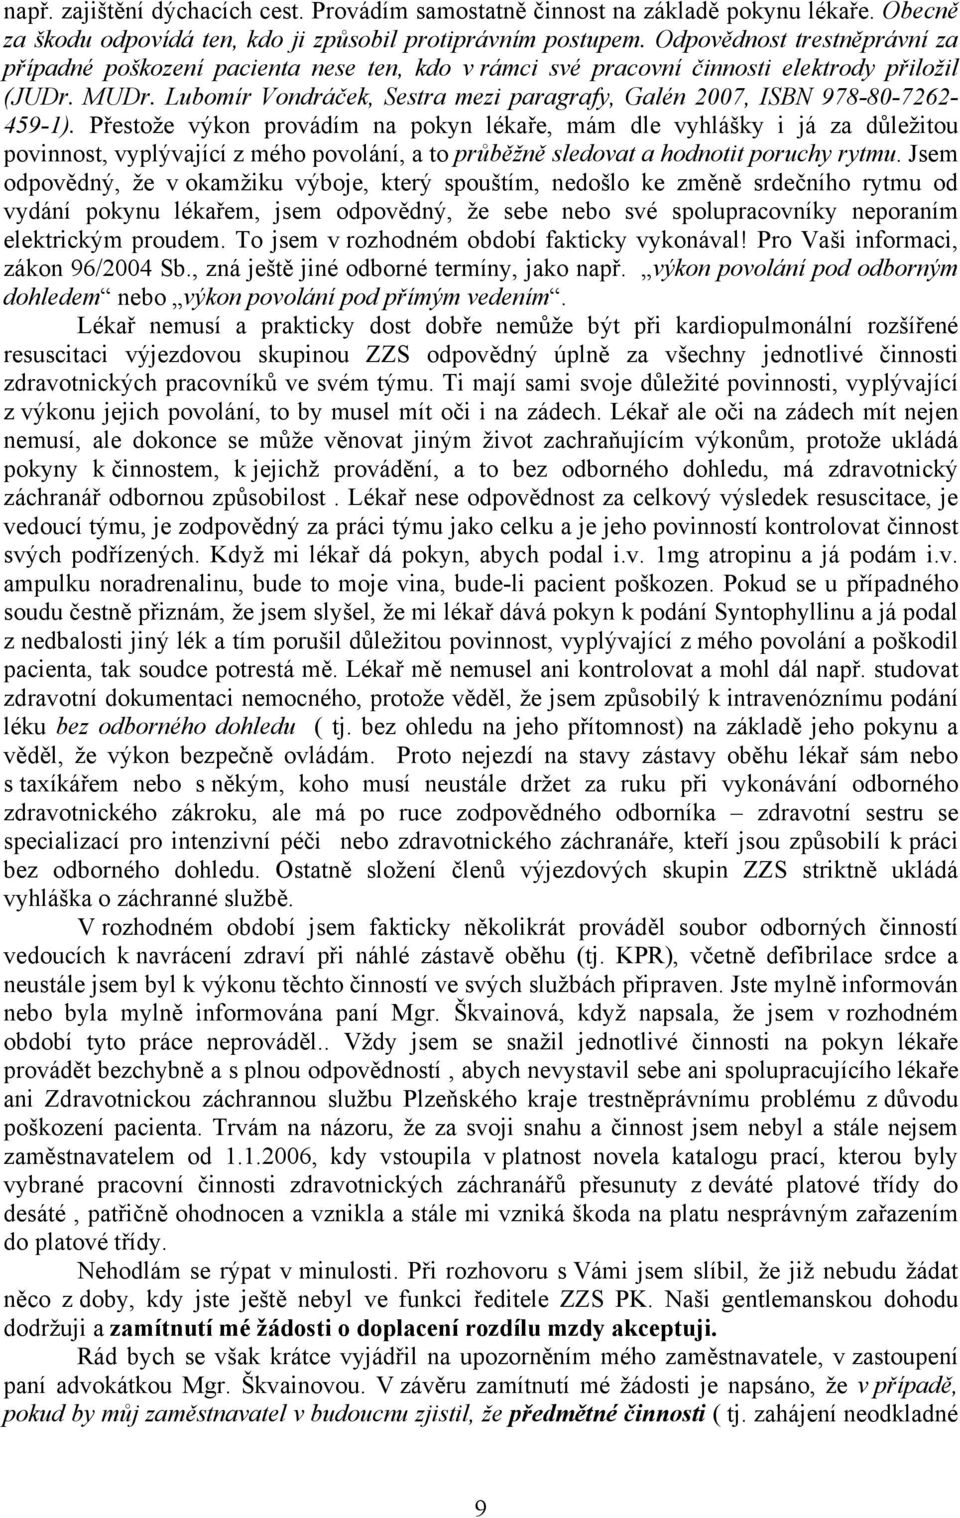 Lubomír Vondráček, Sestra mezi paragrafy, Galén 2007, ISBN 978-80-7262-459-1).